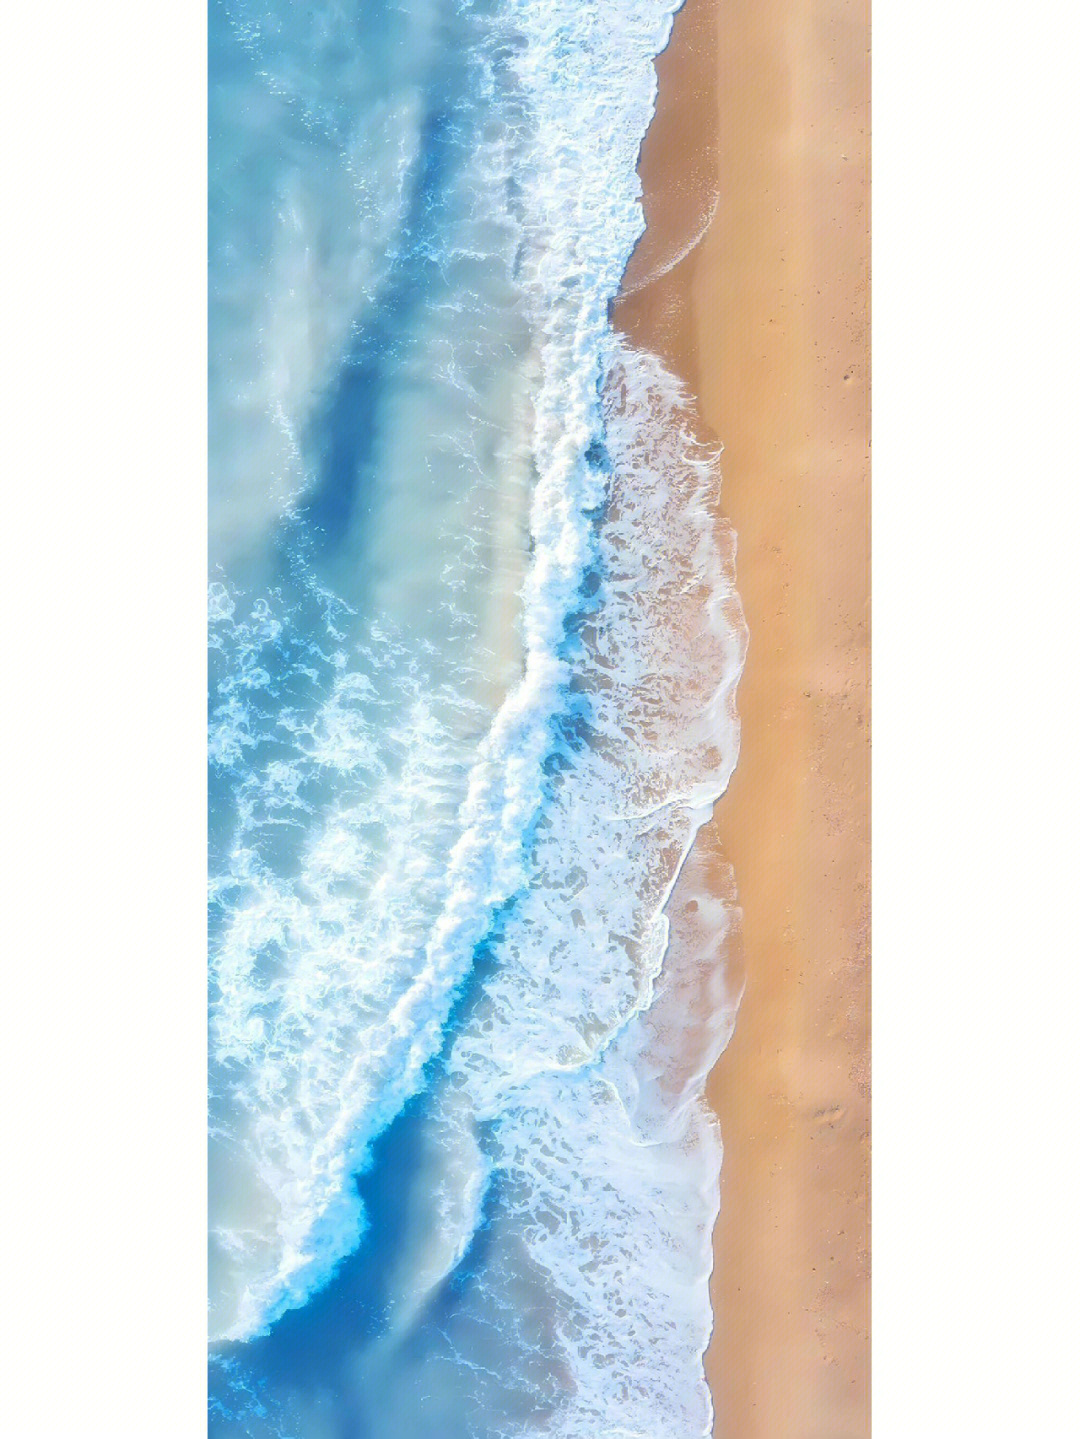 手机壁纸清晰大海图片